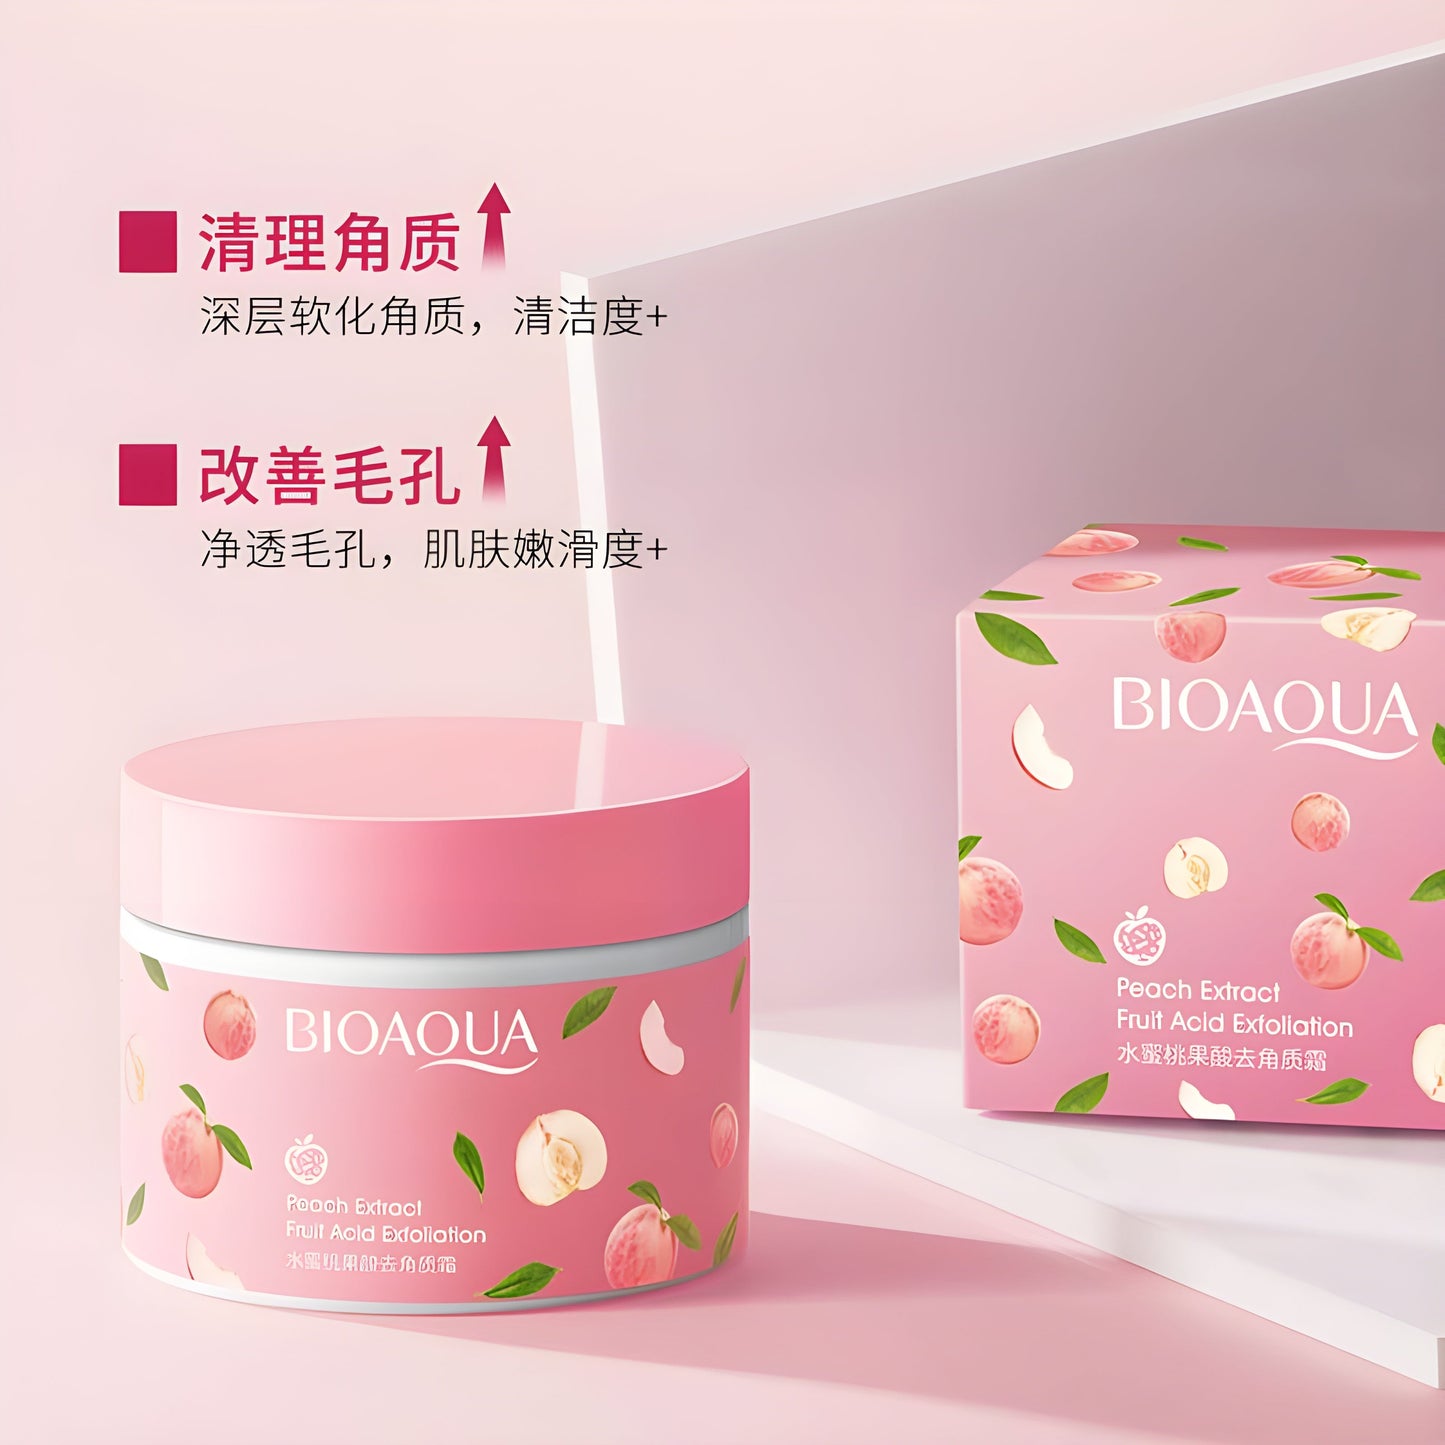 Bioaqua Peach Extract Fruit Acid Exfoliating Face Gel Cream - 140g